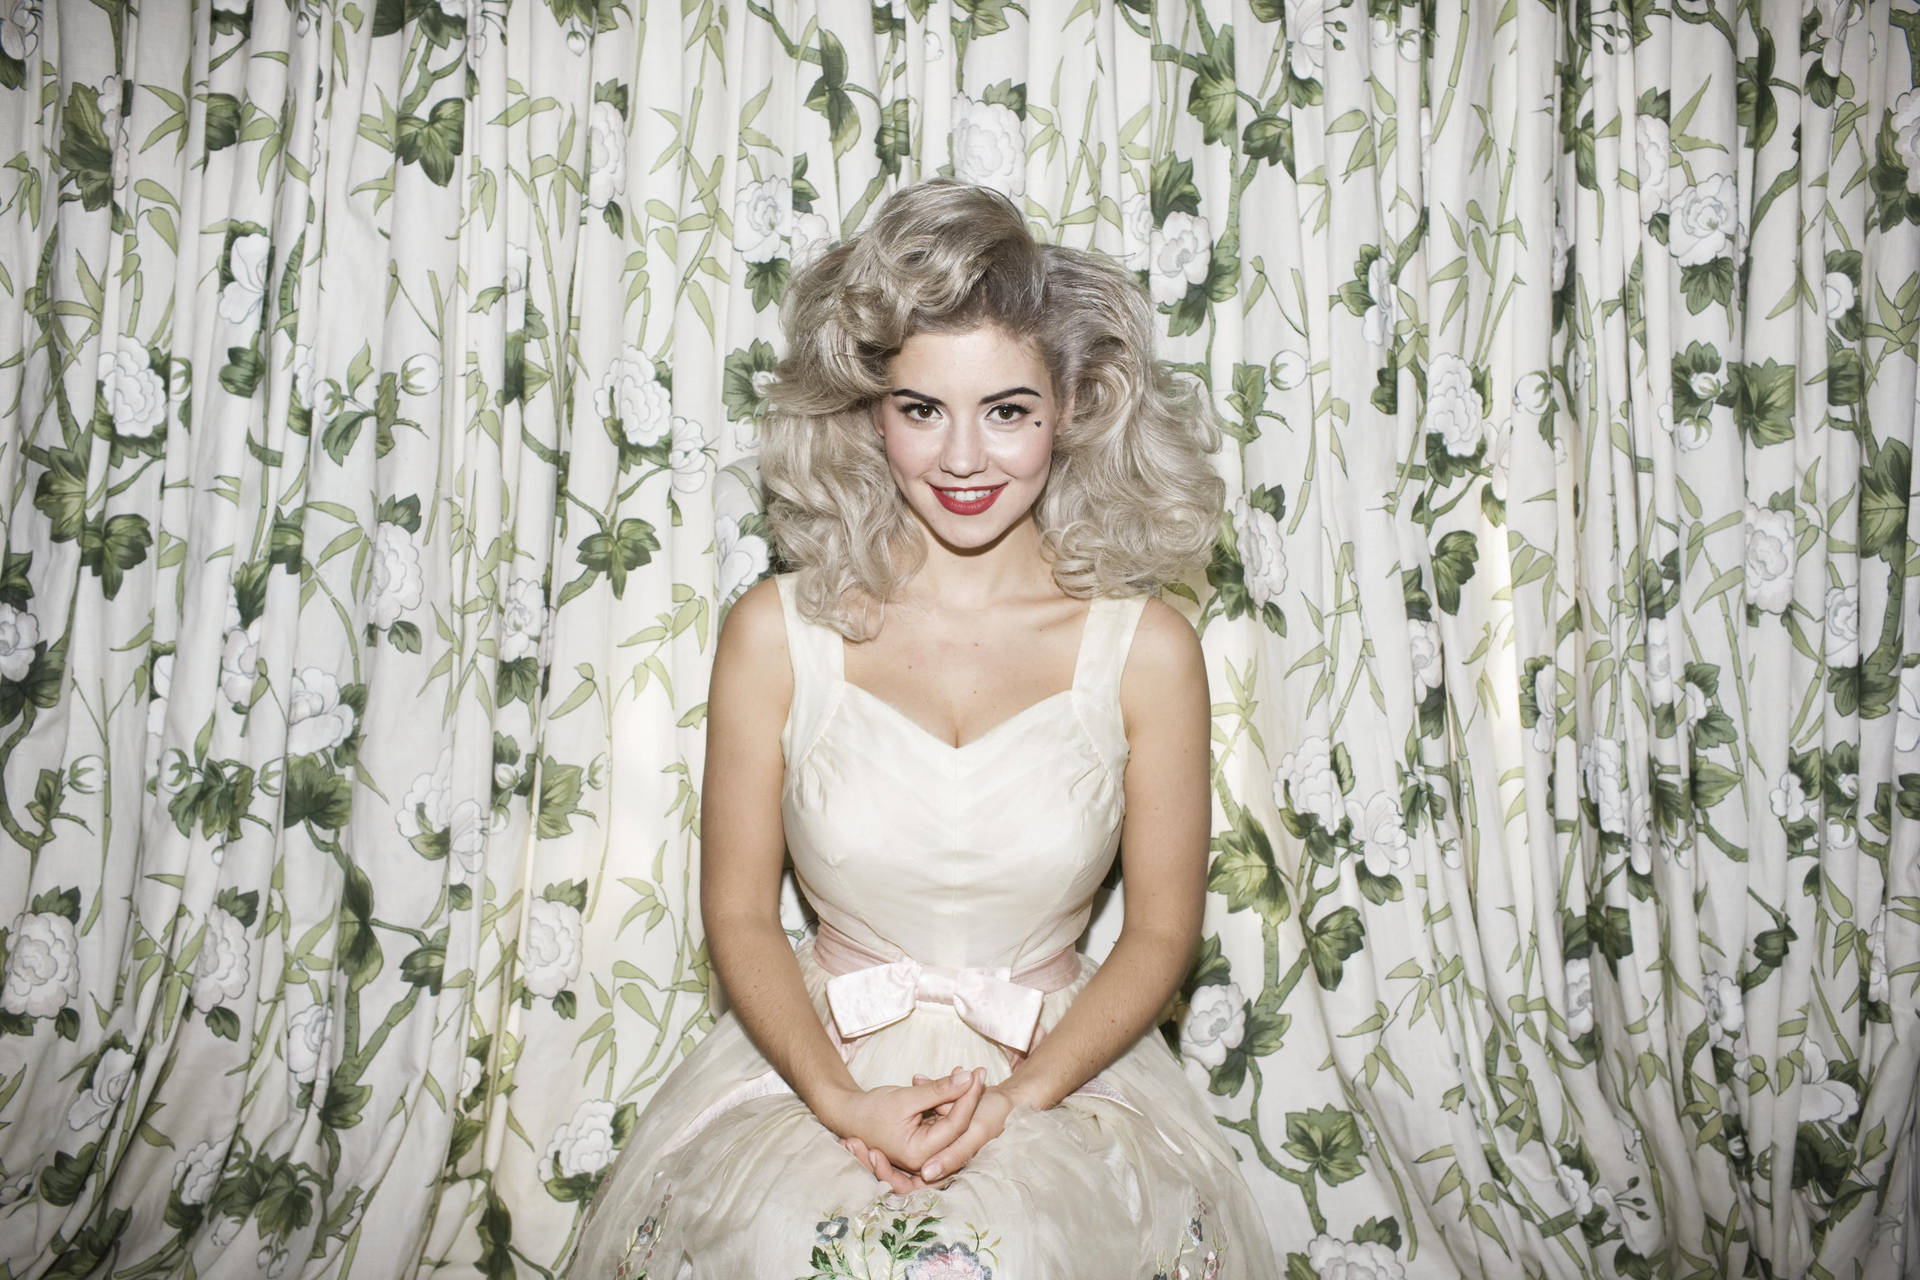 Marina And The Diamonds Showcasing Her Stunning Blonde Look.